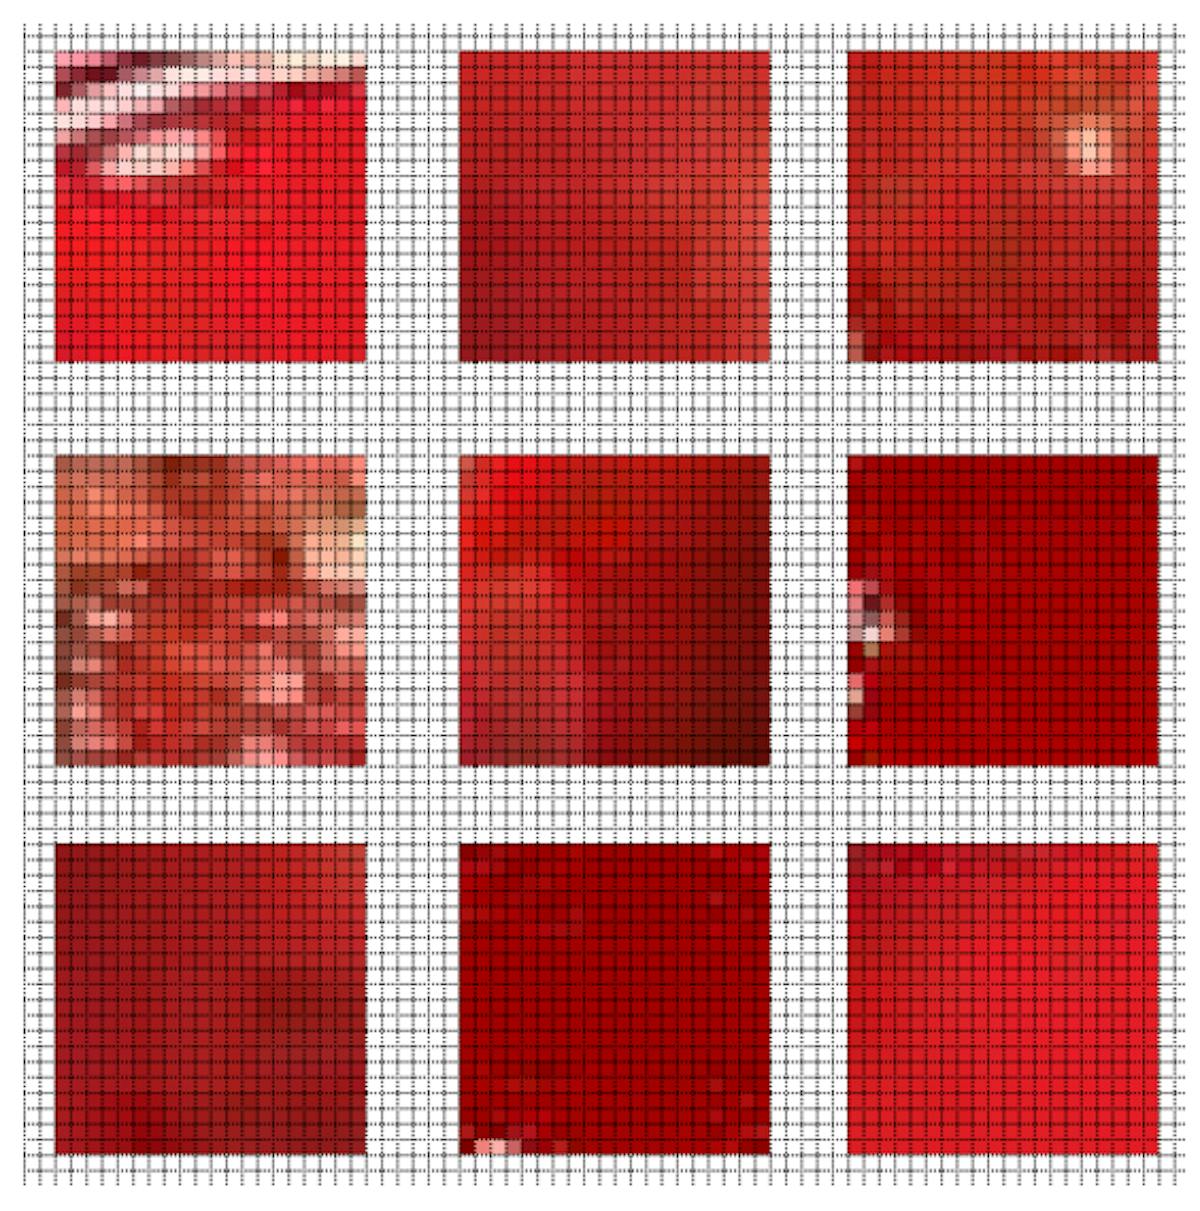 그림 3.2: 혈액이 포함된 20 × 20 크기의 샘플 절단 영역을 보여주는 그림.